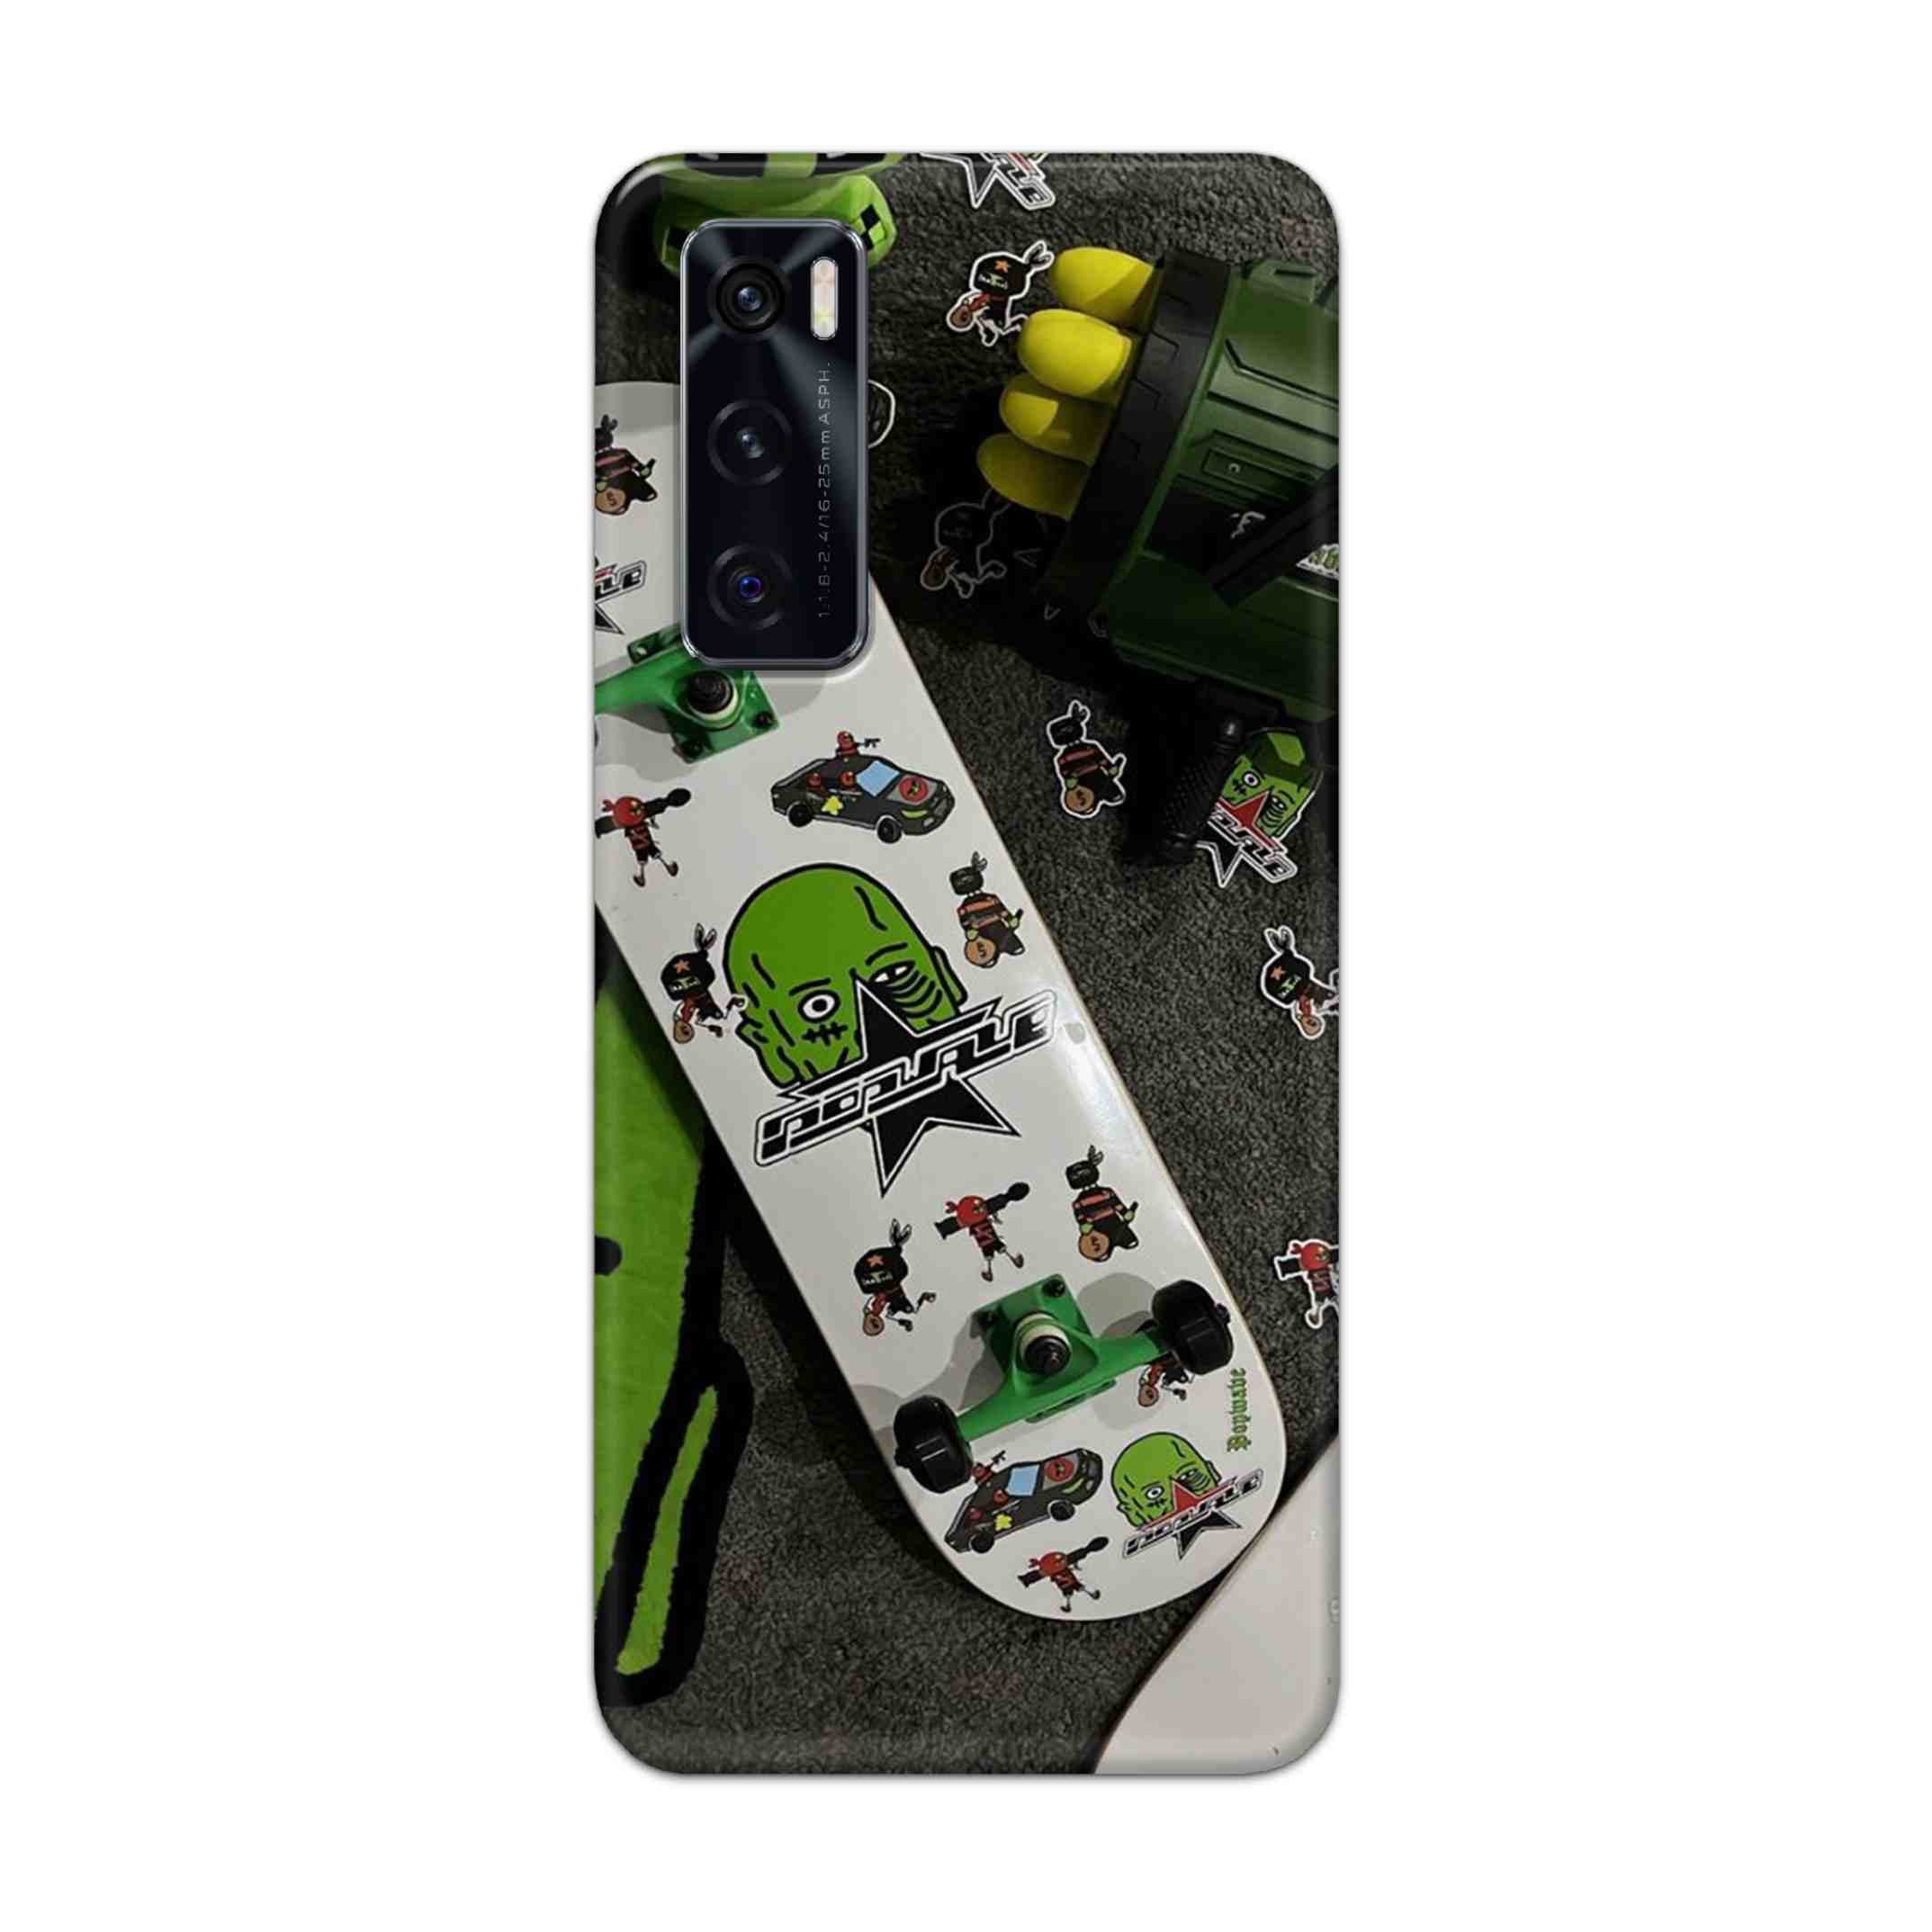 Buy Hulk Skateboard Hard Back Mobile Phone Case Cover For Vivo V20 SE Online